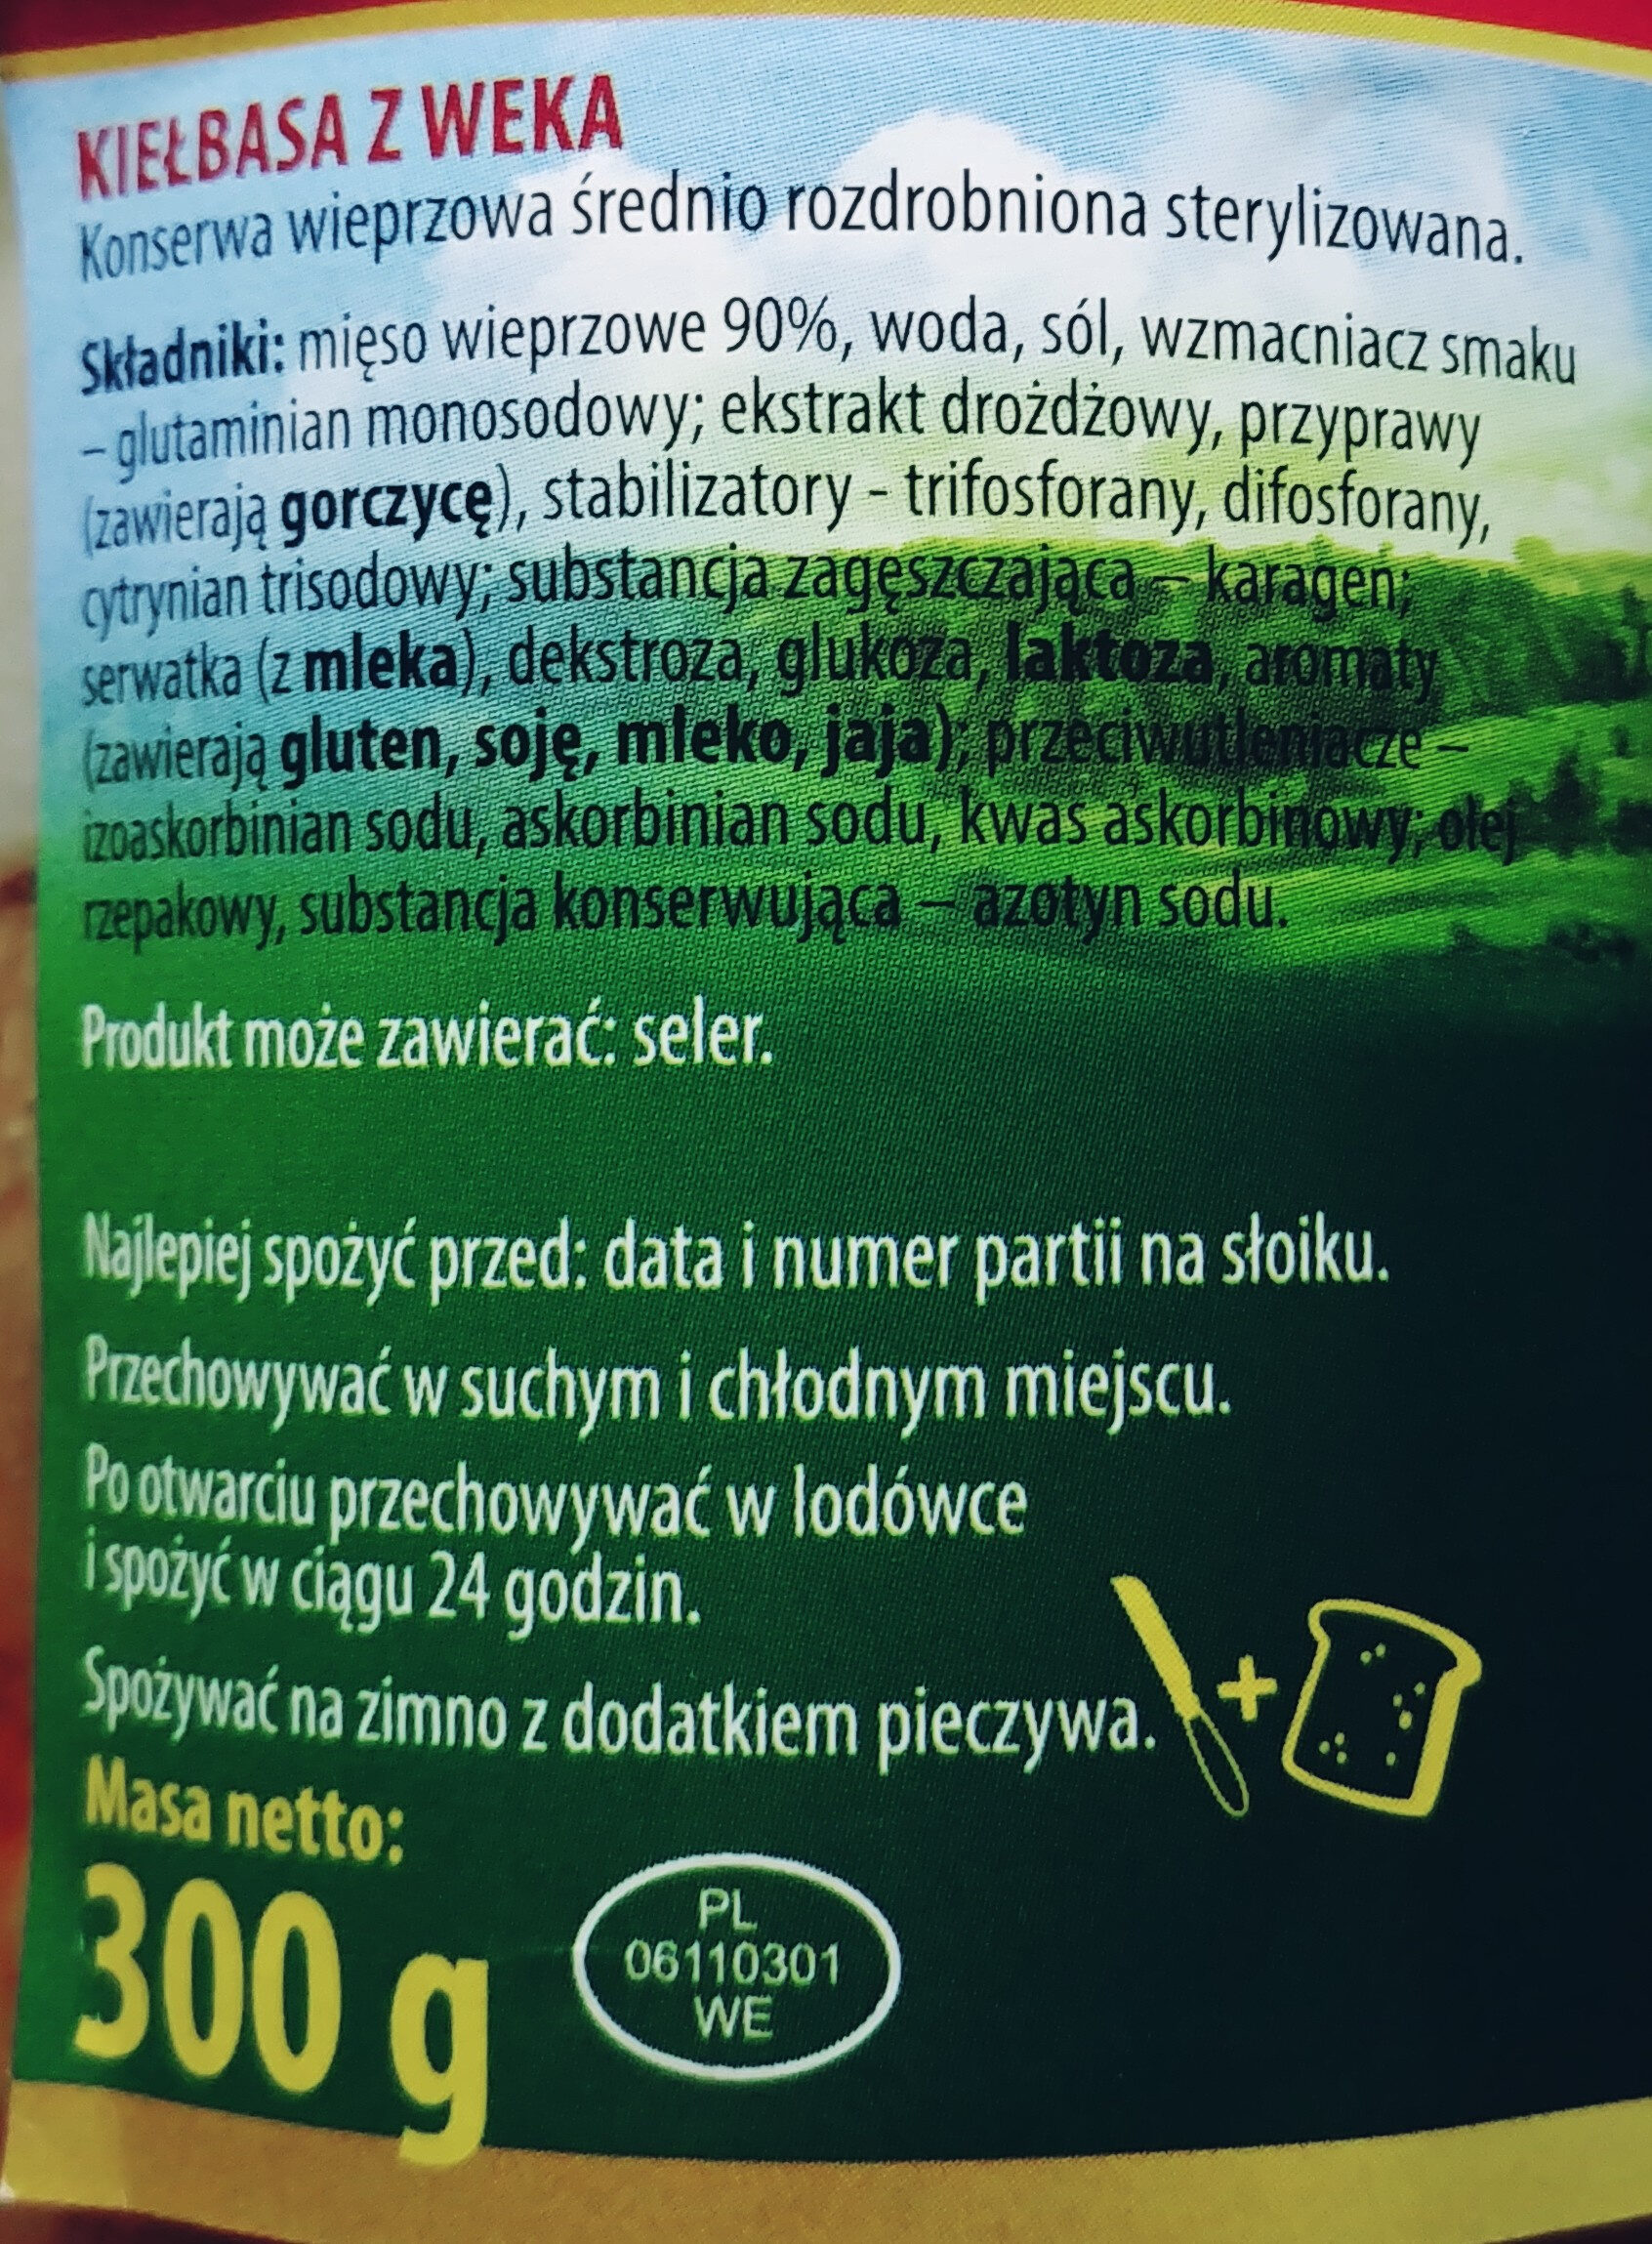 Kiełbasa z weka - Ingredients - pl